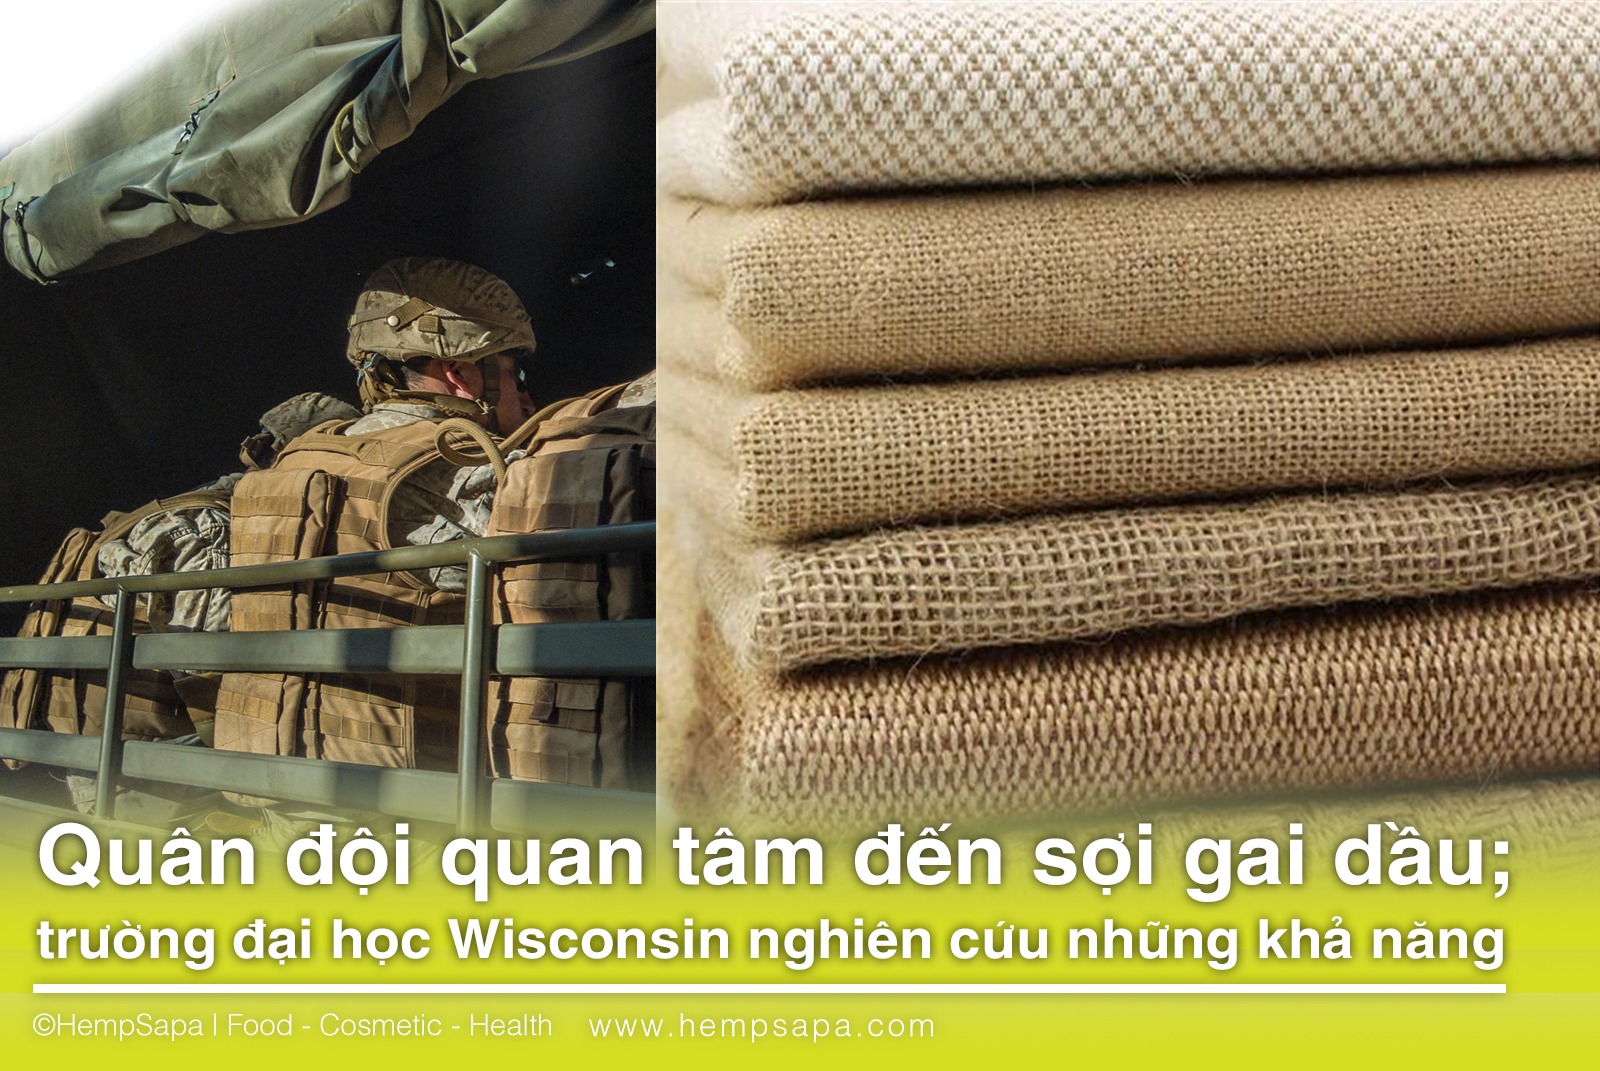 Quân đội quan tâm đến sợi gai dầu trường đại học Wisconsin nghiên cứu những khả năng